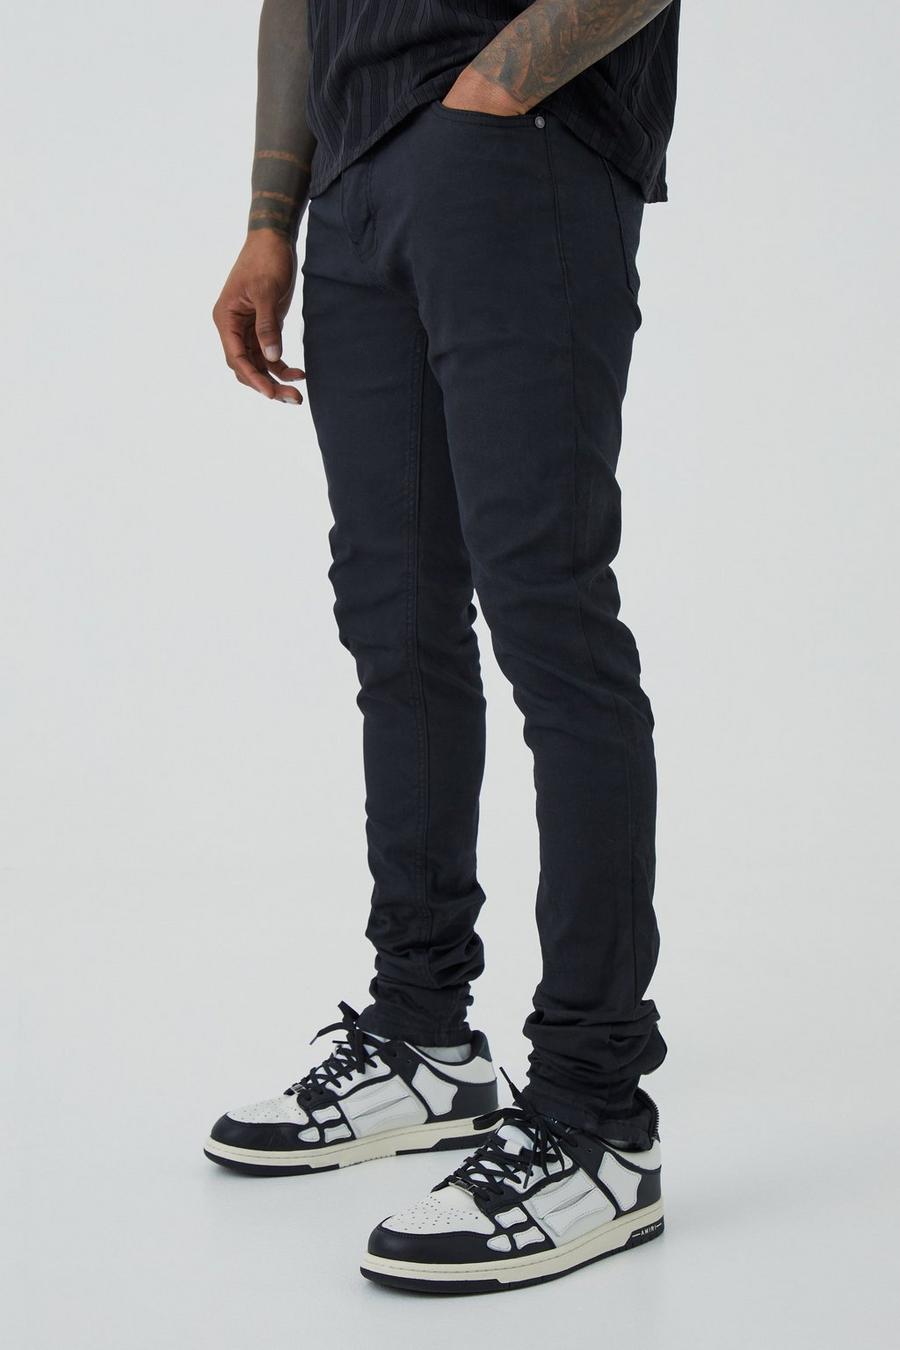 Beschichtete Skinny Jeans mit Reißverschluss, Black schwarz